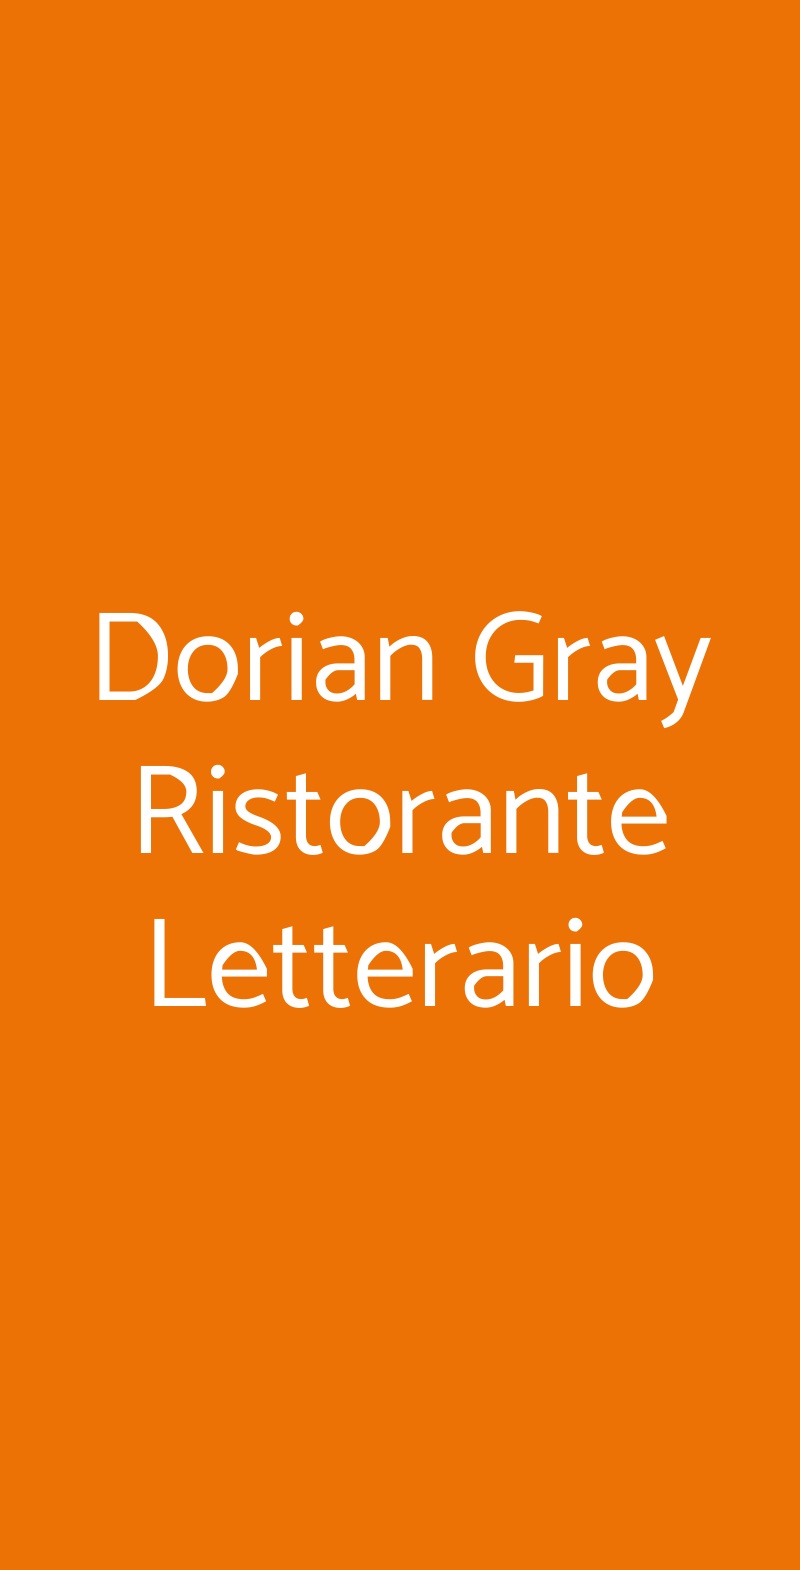 Dorian Gray Ristorante Letterario Novi Ligure menù 1 pagina